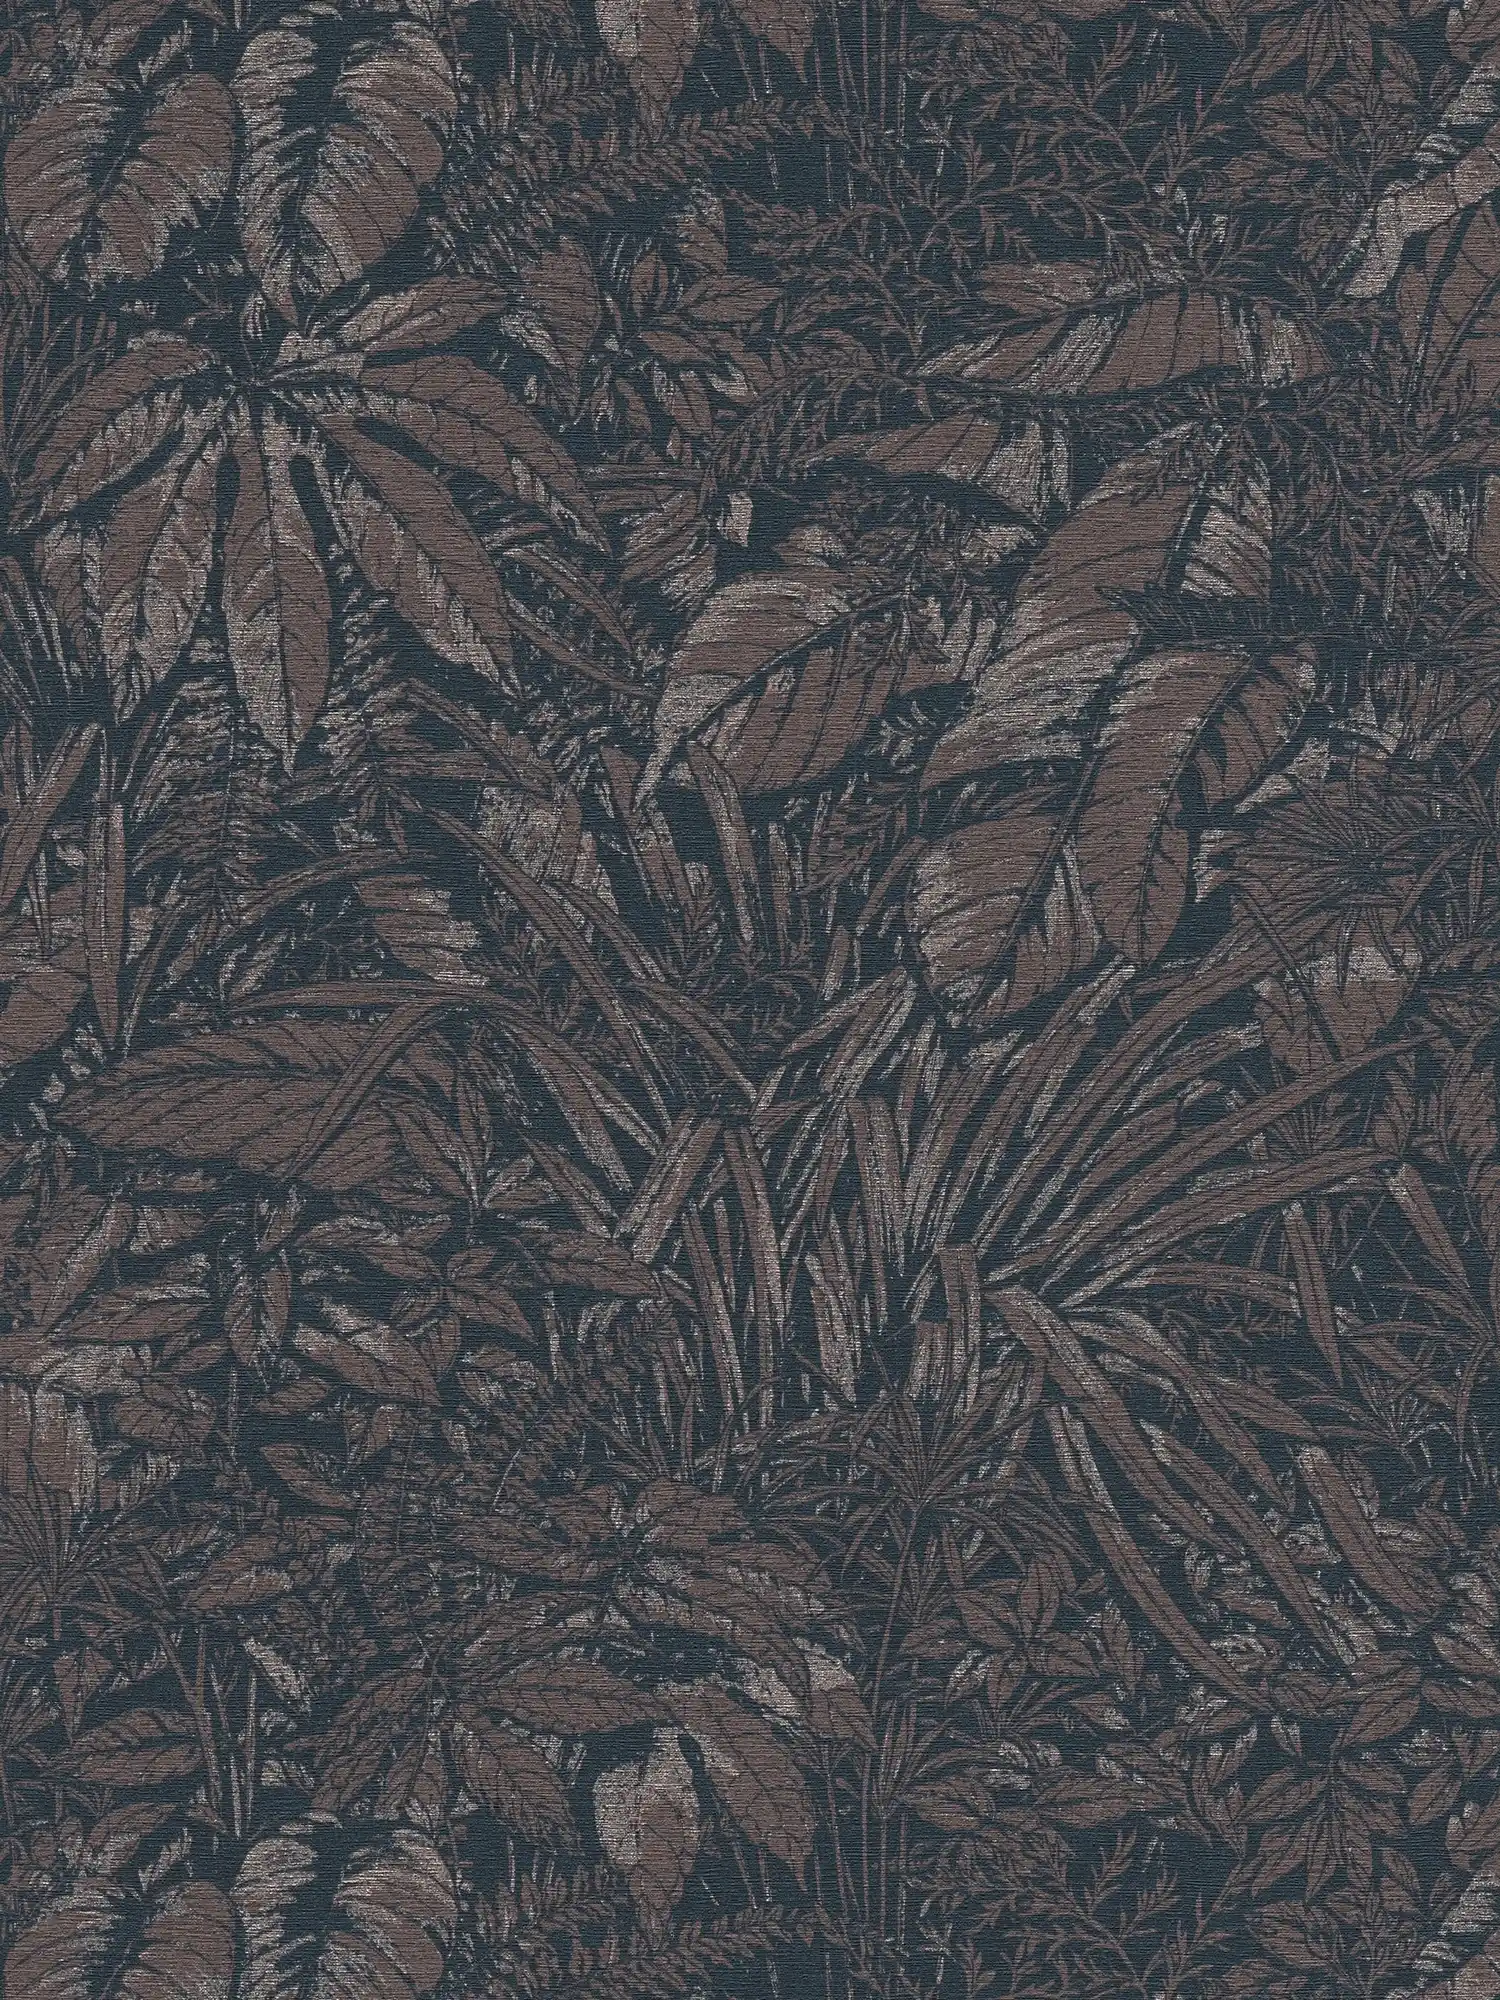 Dschungel Tapete leicht glänzend mit Blatt Muster – Braun, Schwarz, Silber
